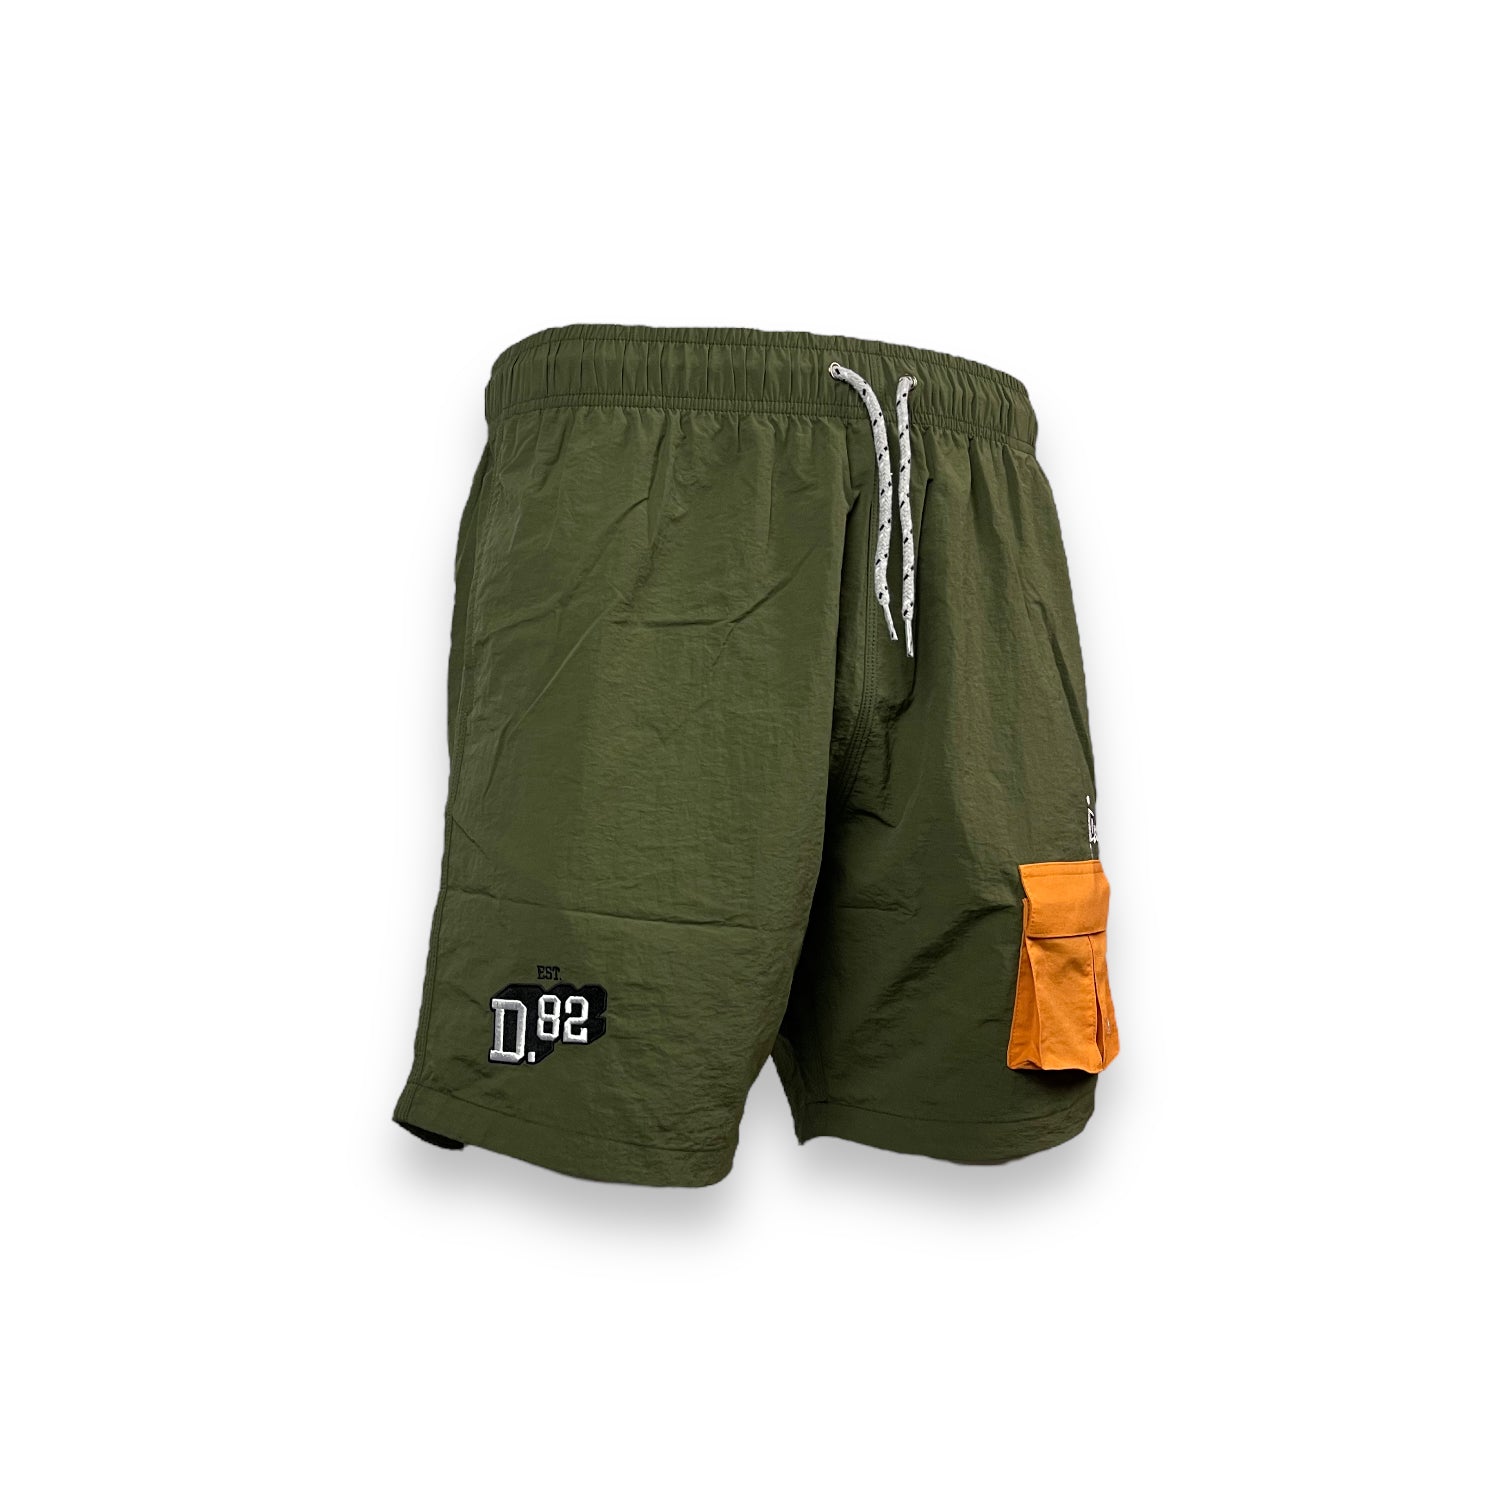 DLAB Hybrid Shorts Olive Green Orange Pocket